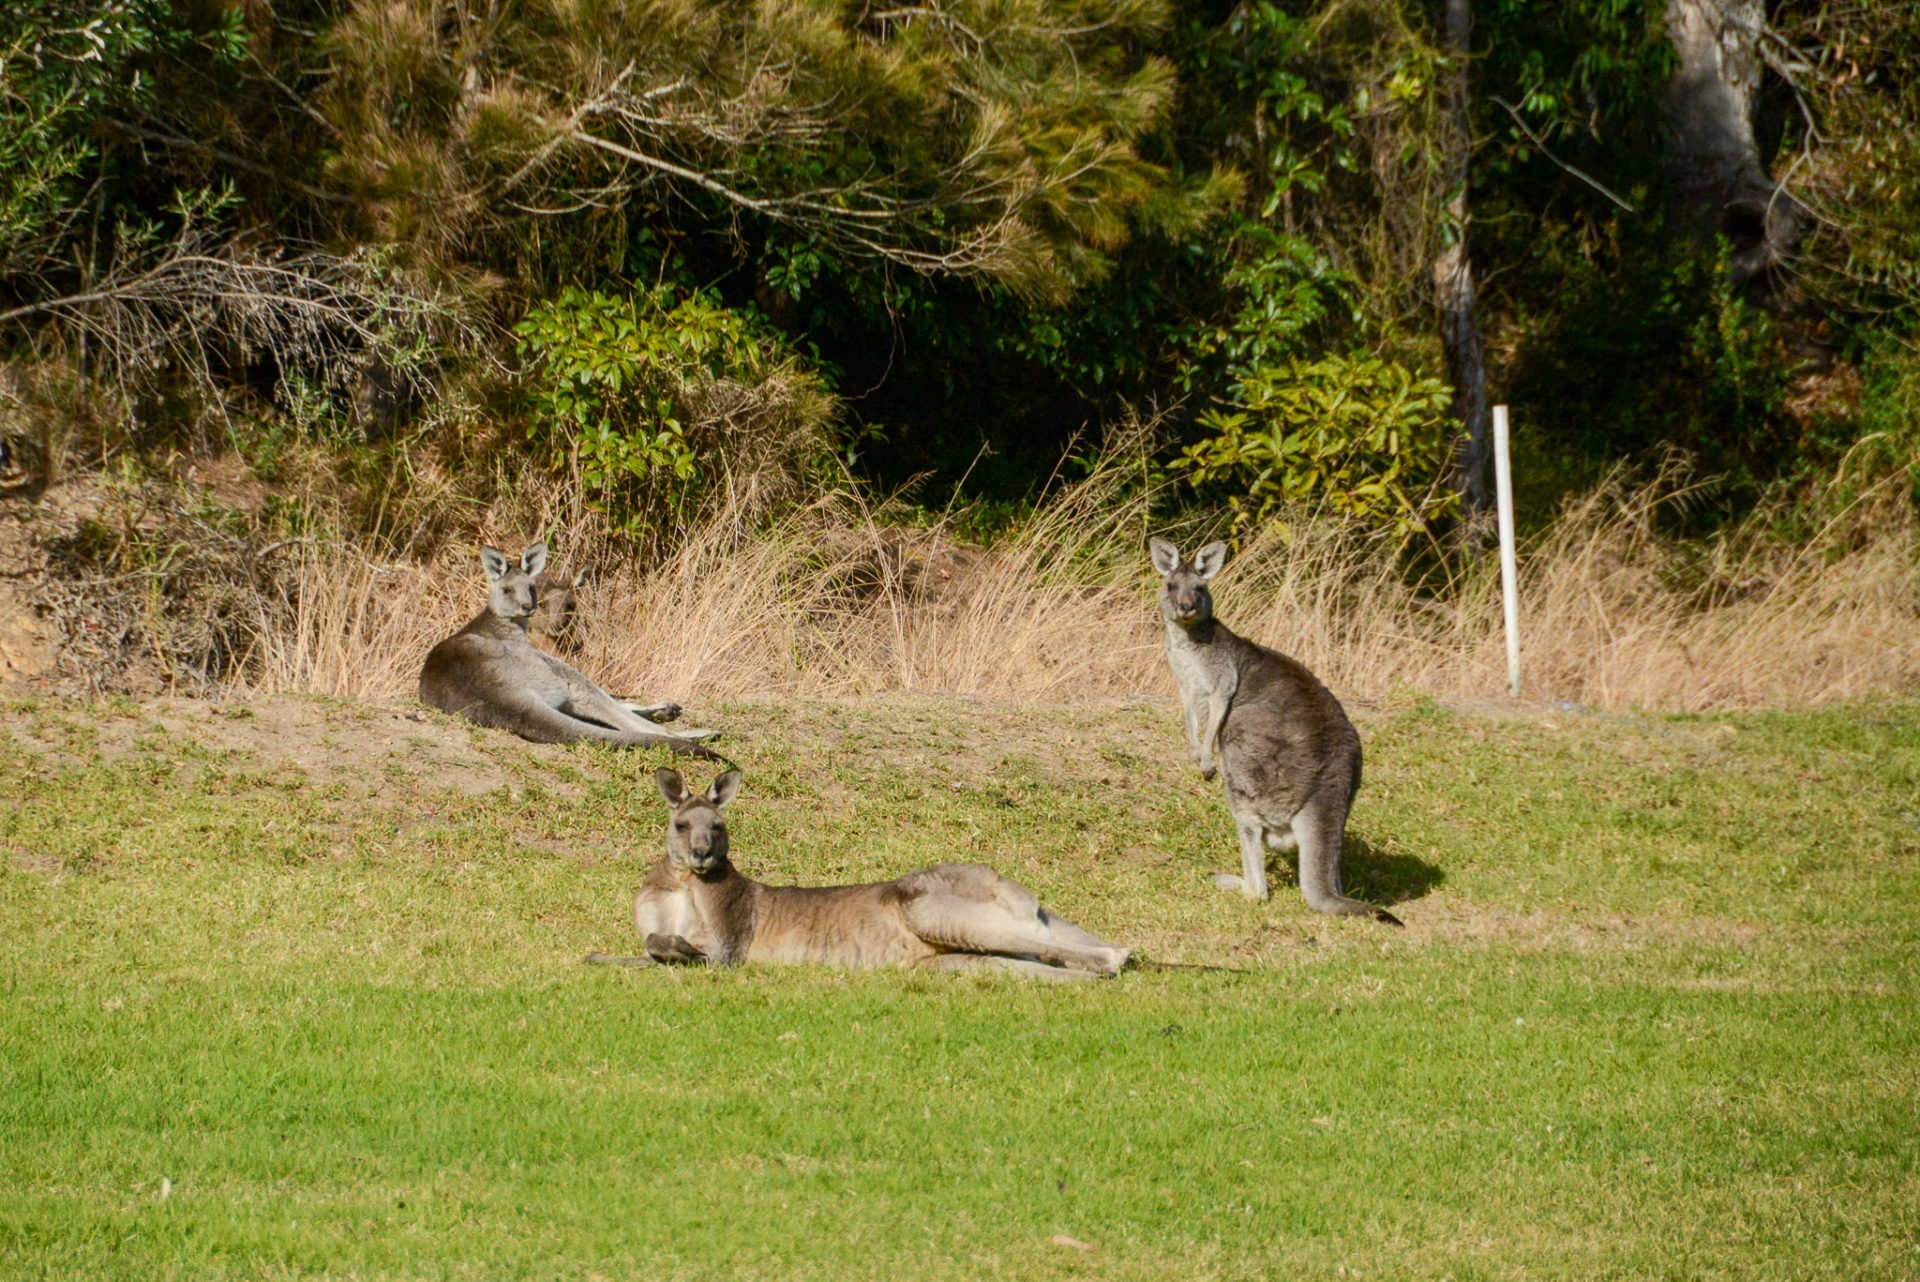 Salonlöwe oder doch ein Känguru? Diese Frage stellt sich beim Roadtrip auf dem Princes Highway